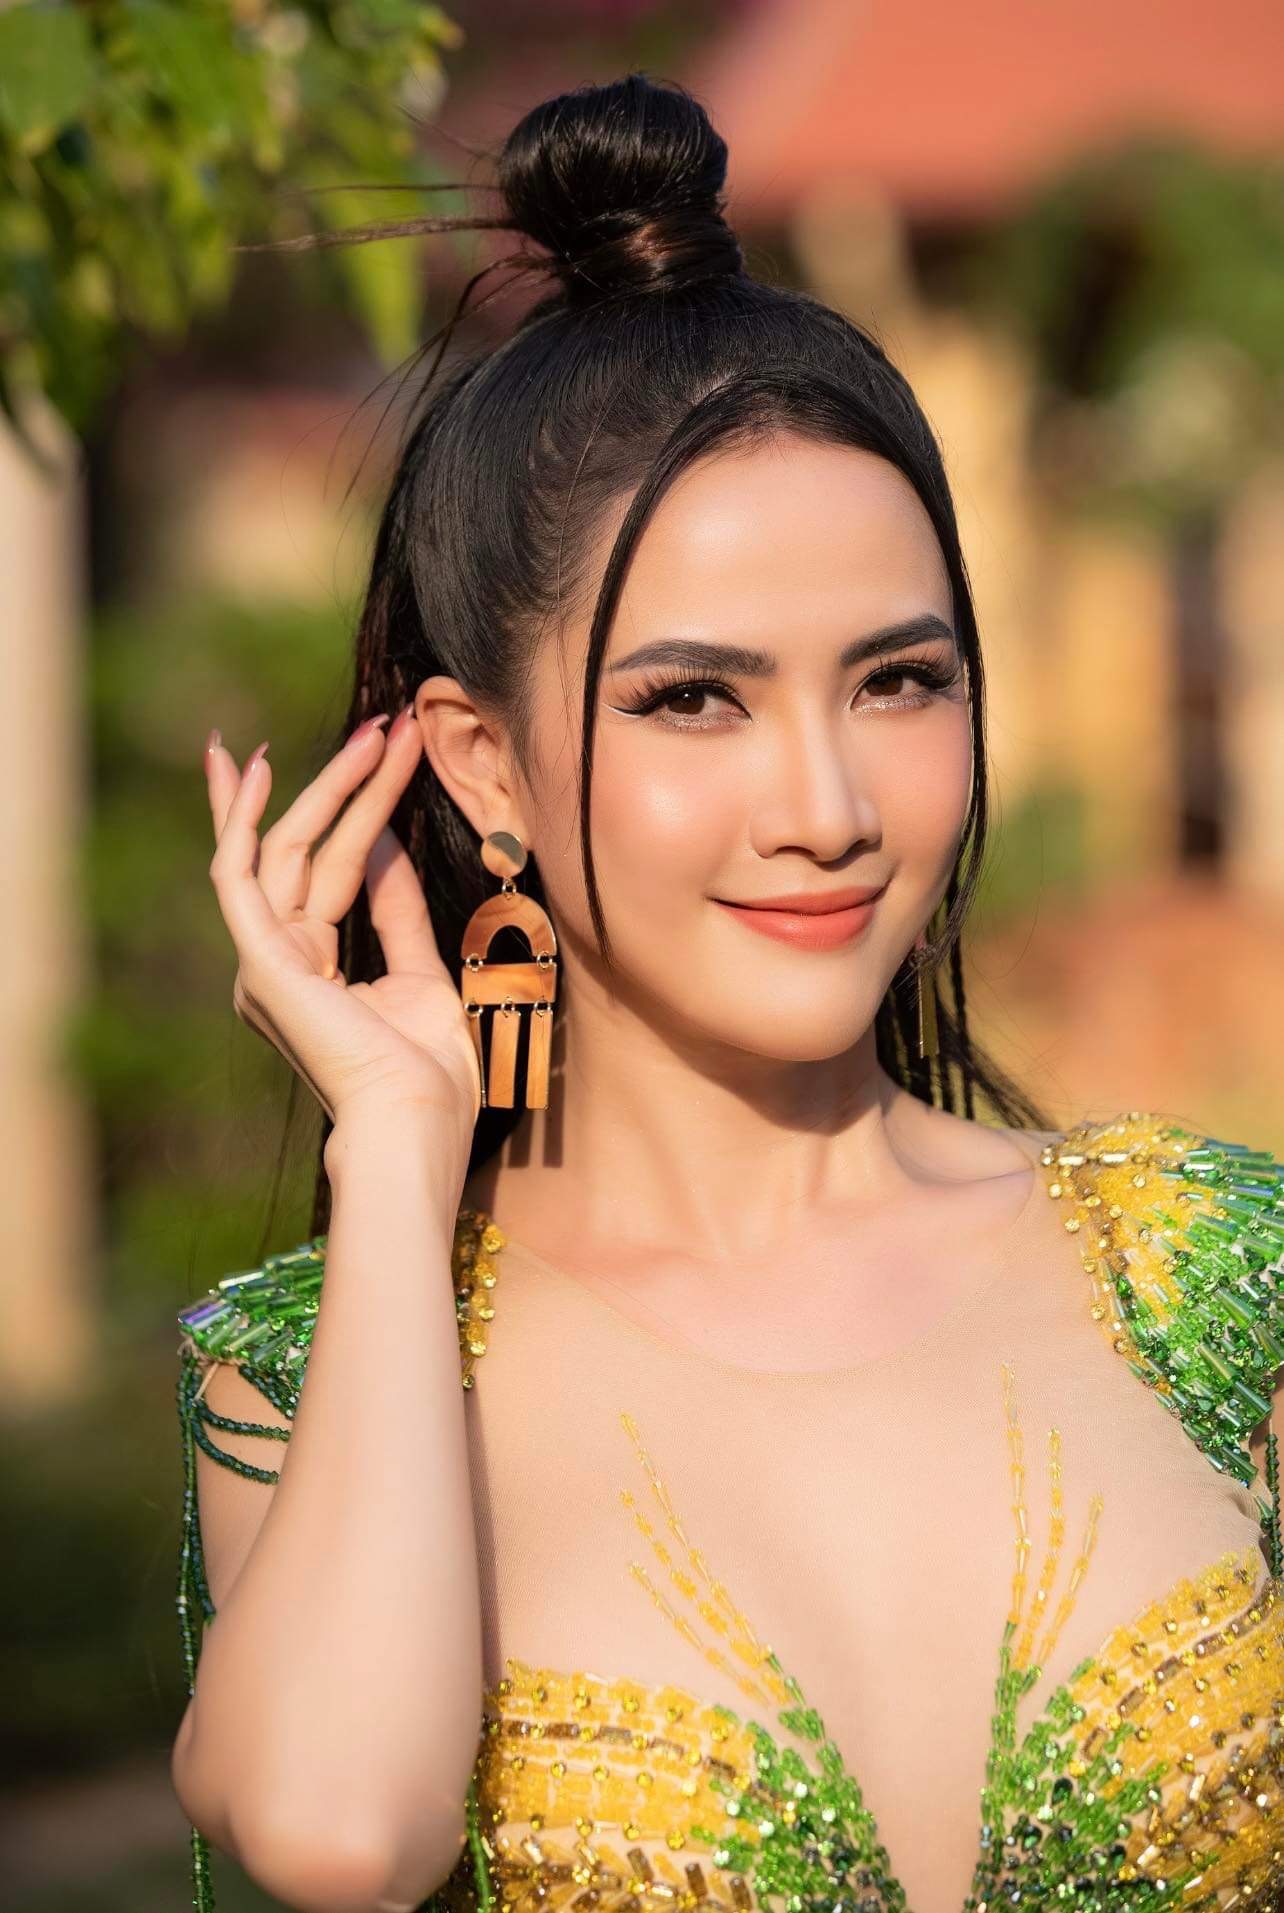  Hoa hậu Phan Thị Mơ: “Tôi còn rất yêu nghề